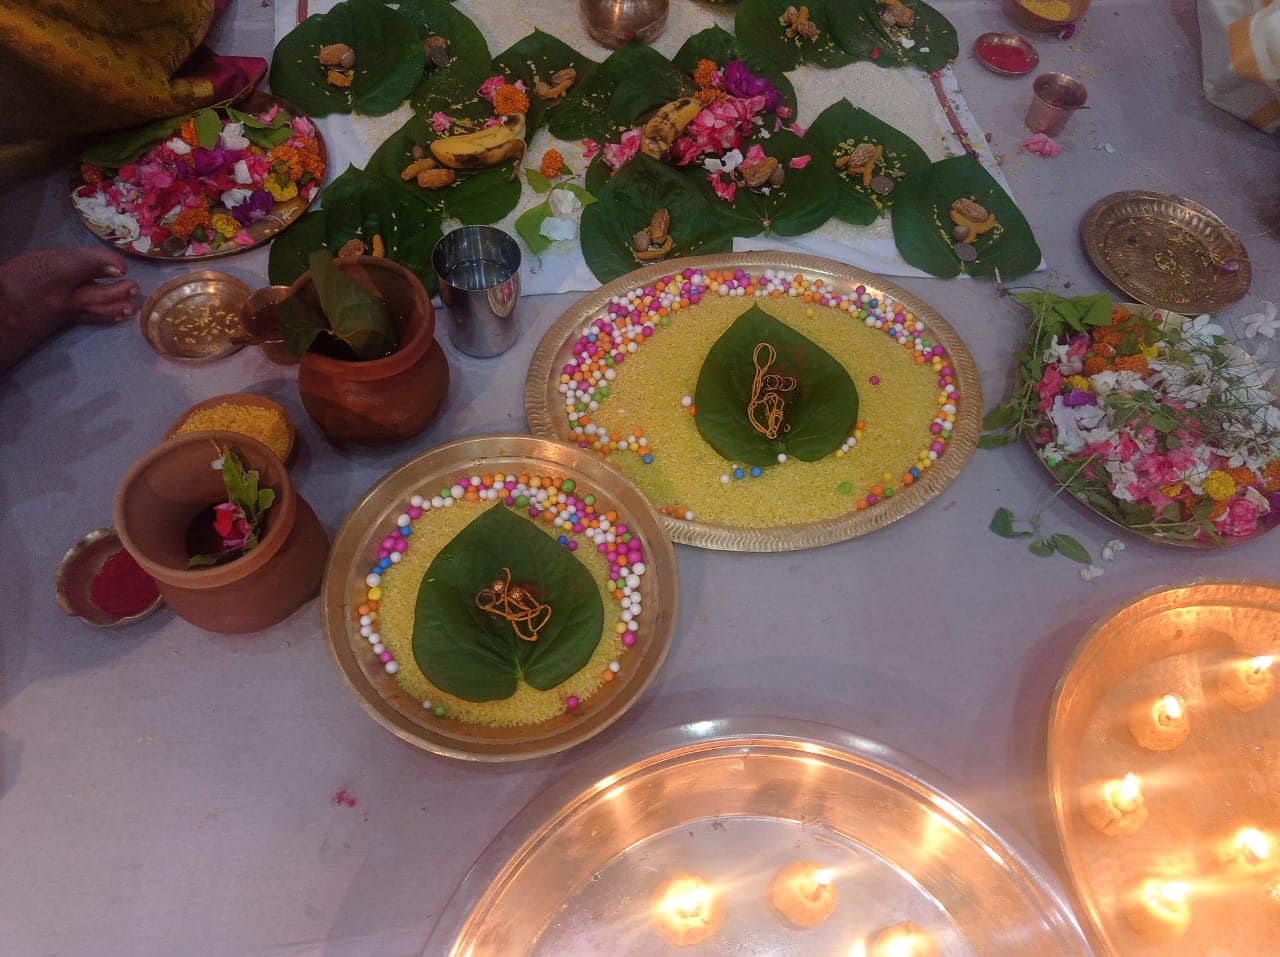  Ram Navami Celebrations